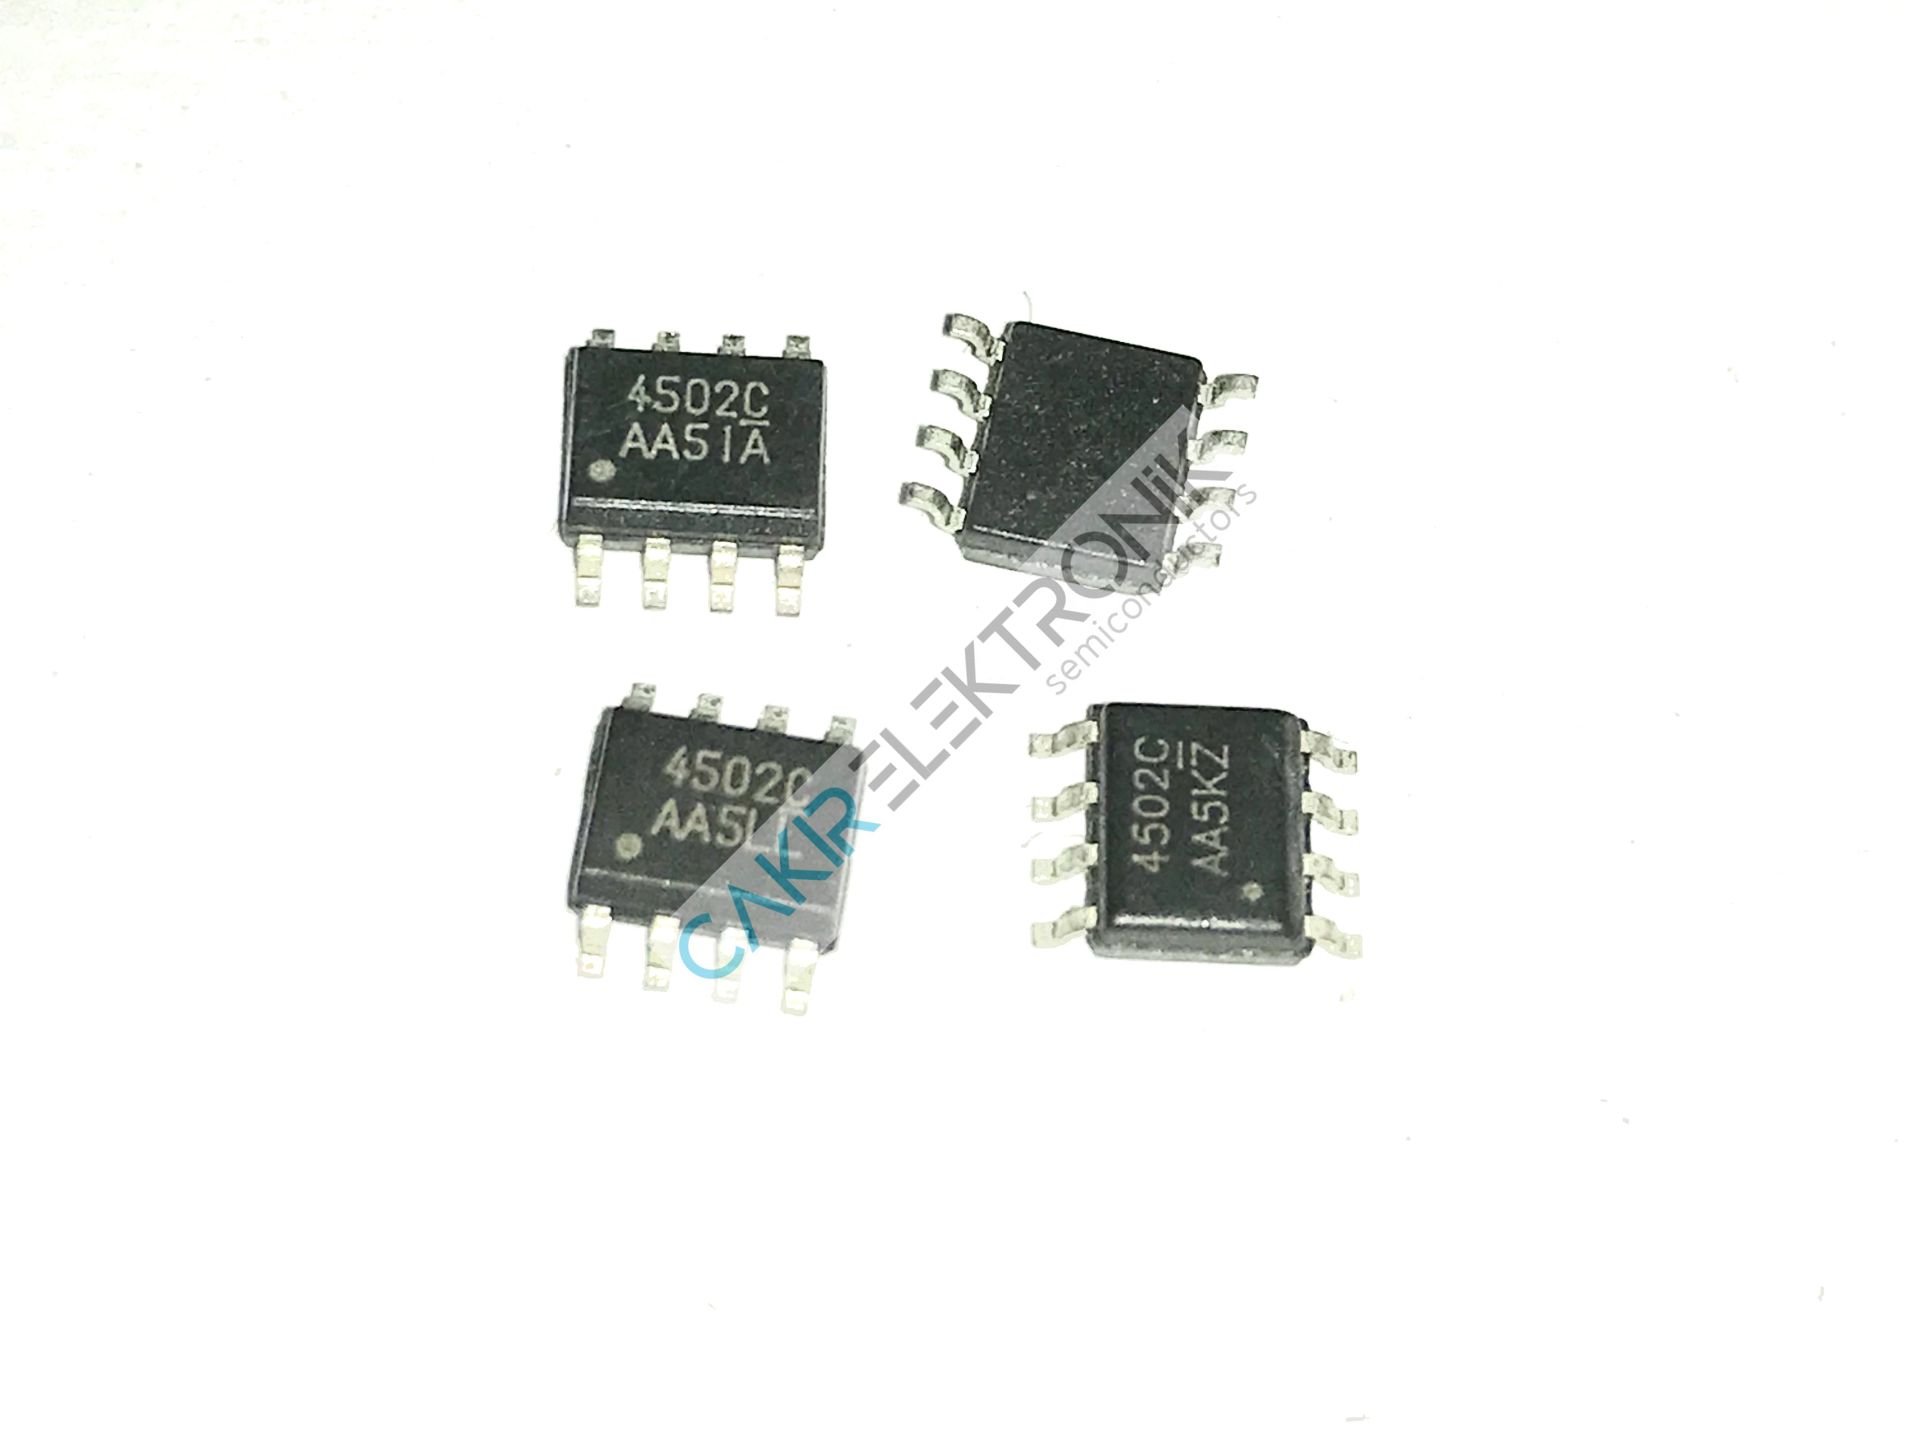 4502C - AP4502C -  AM4502C - P & N-Channel 30-V (D-S) MOSFET